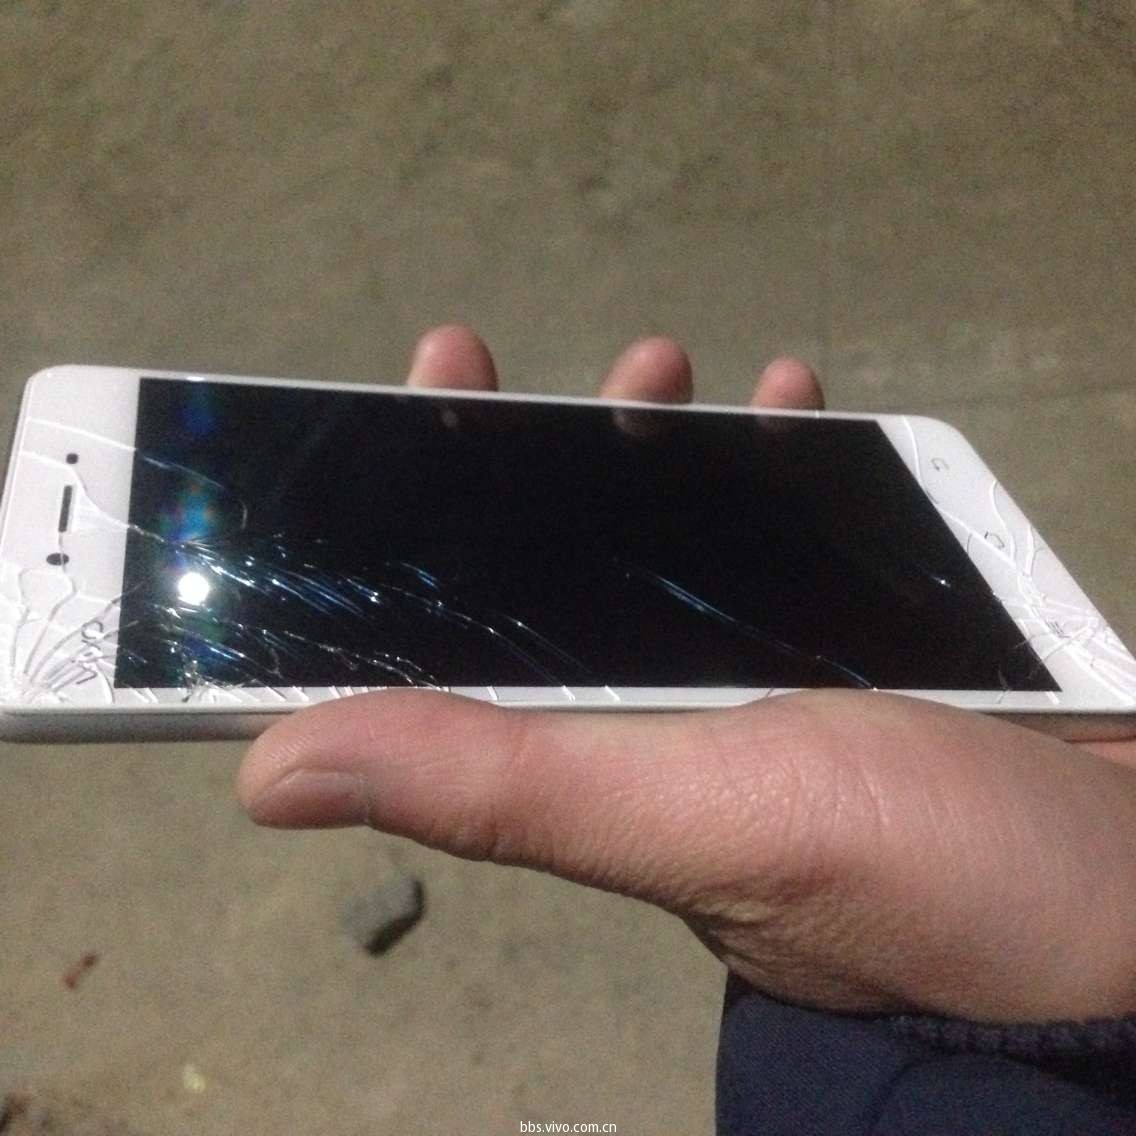 iPhone 11屏碎了！看完官方维修价格，那一刻心也碎了！ - 王石头